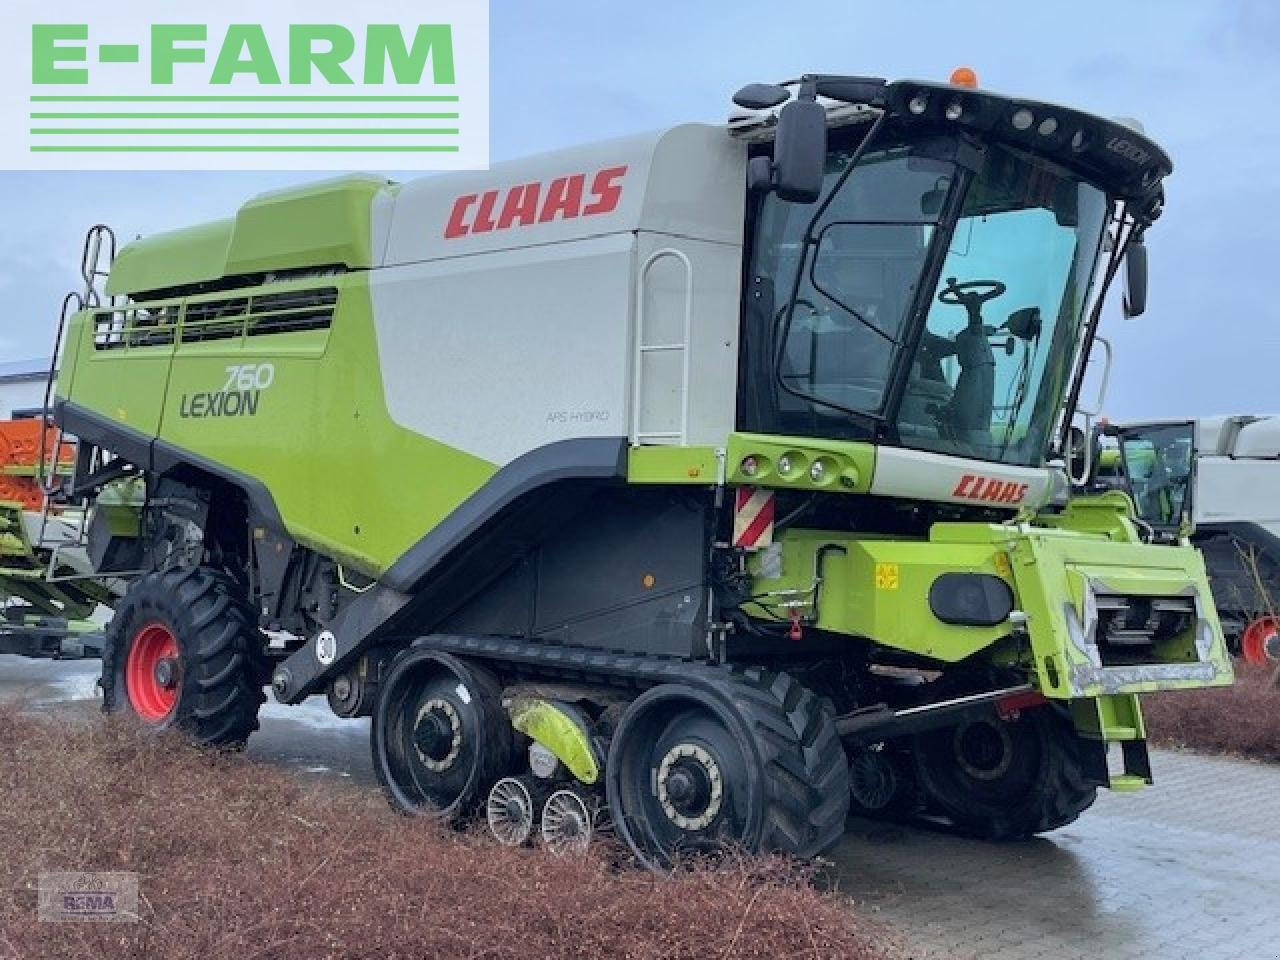 Farm tractor CLAAS lexion 760 terra trac